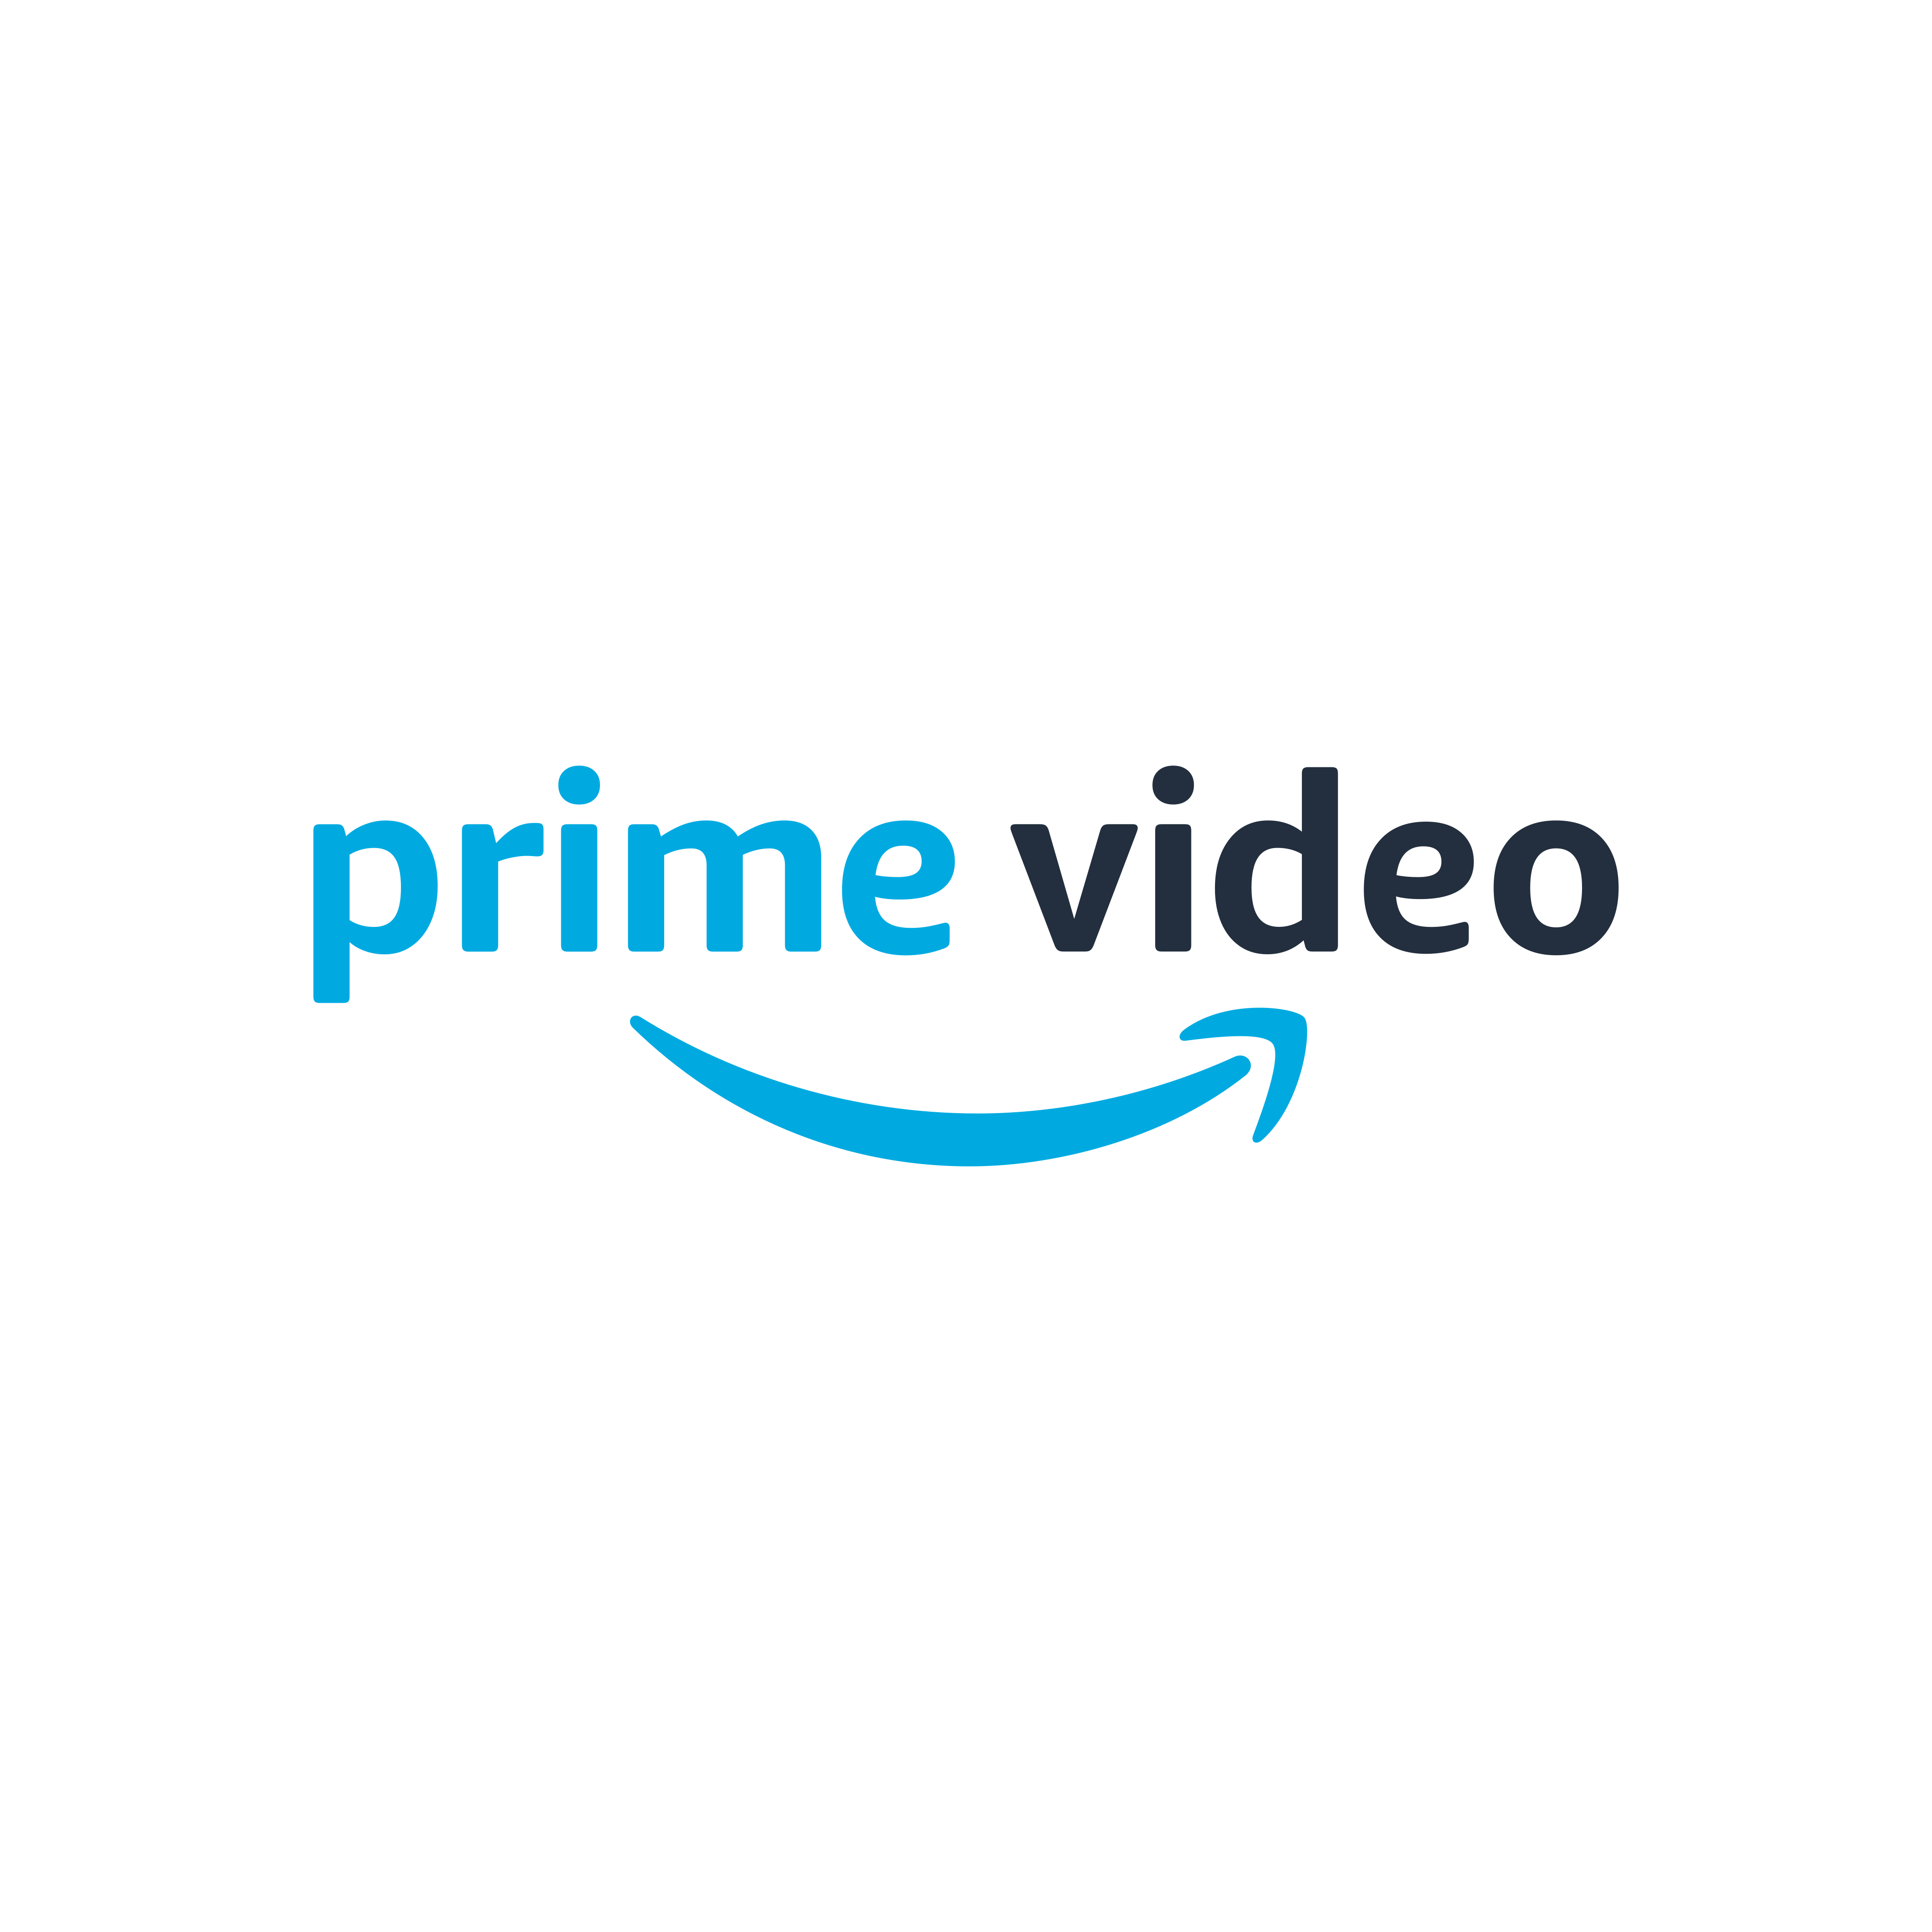 Imagen PNG de la membresía de Amazon Prime